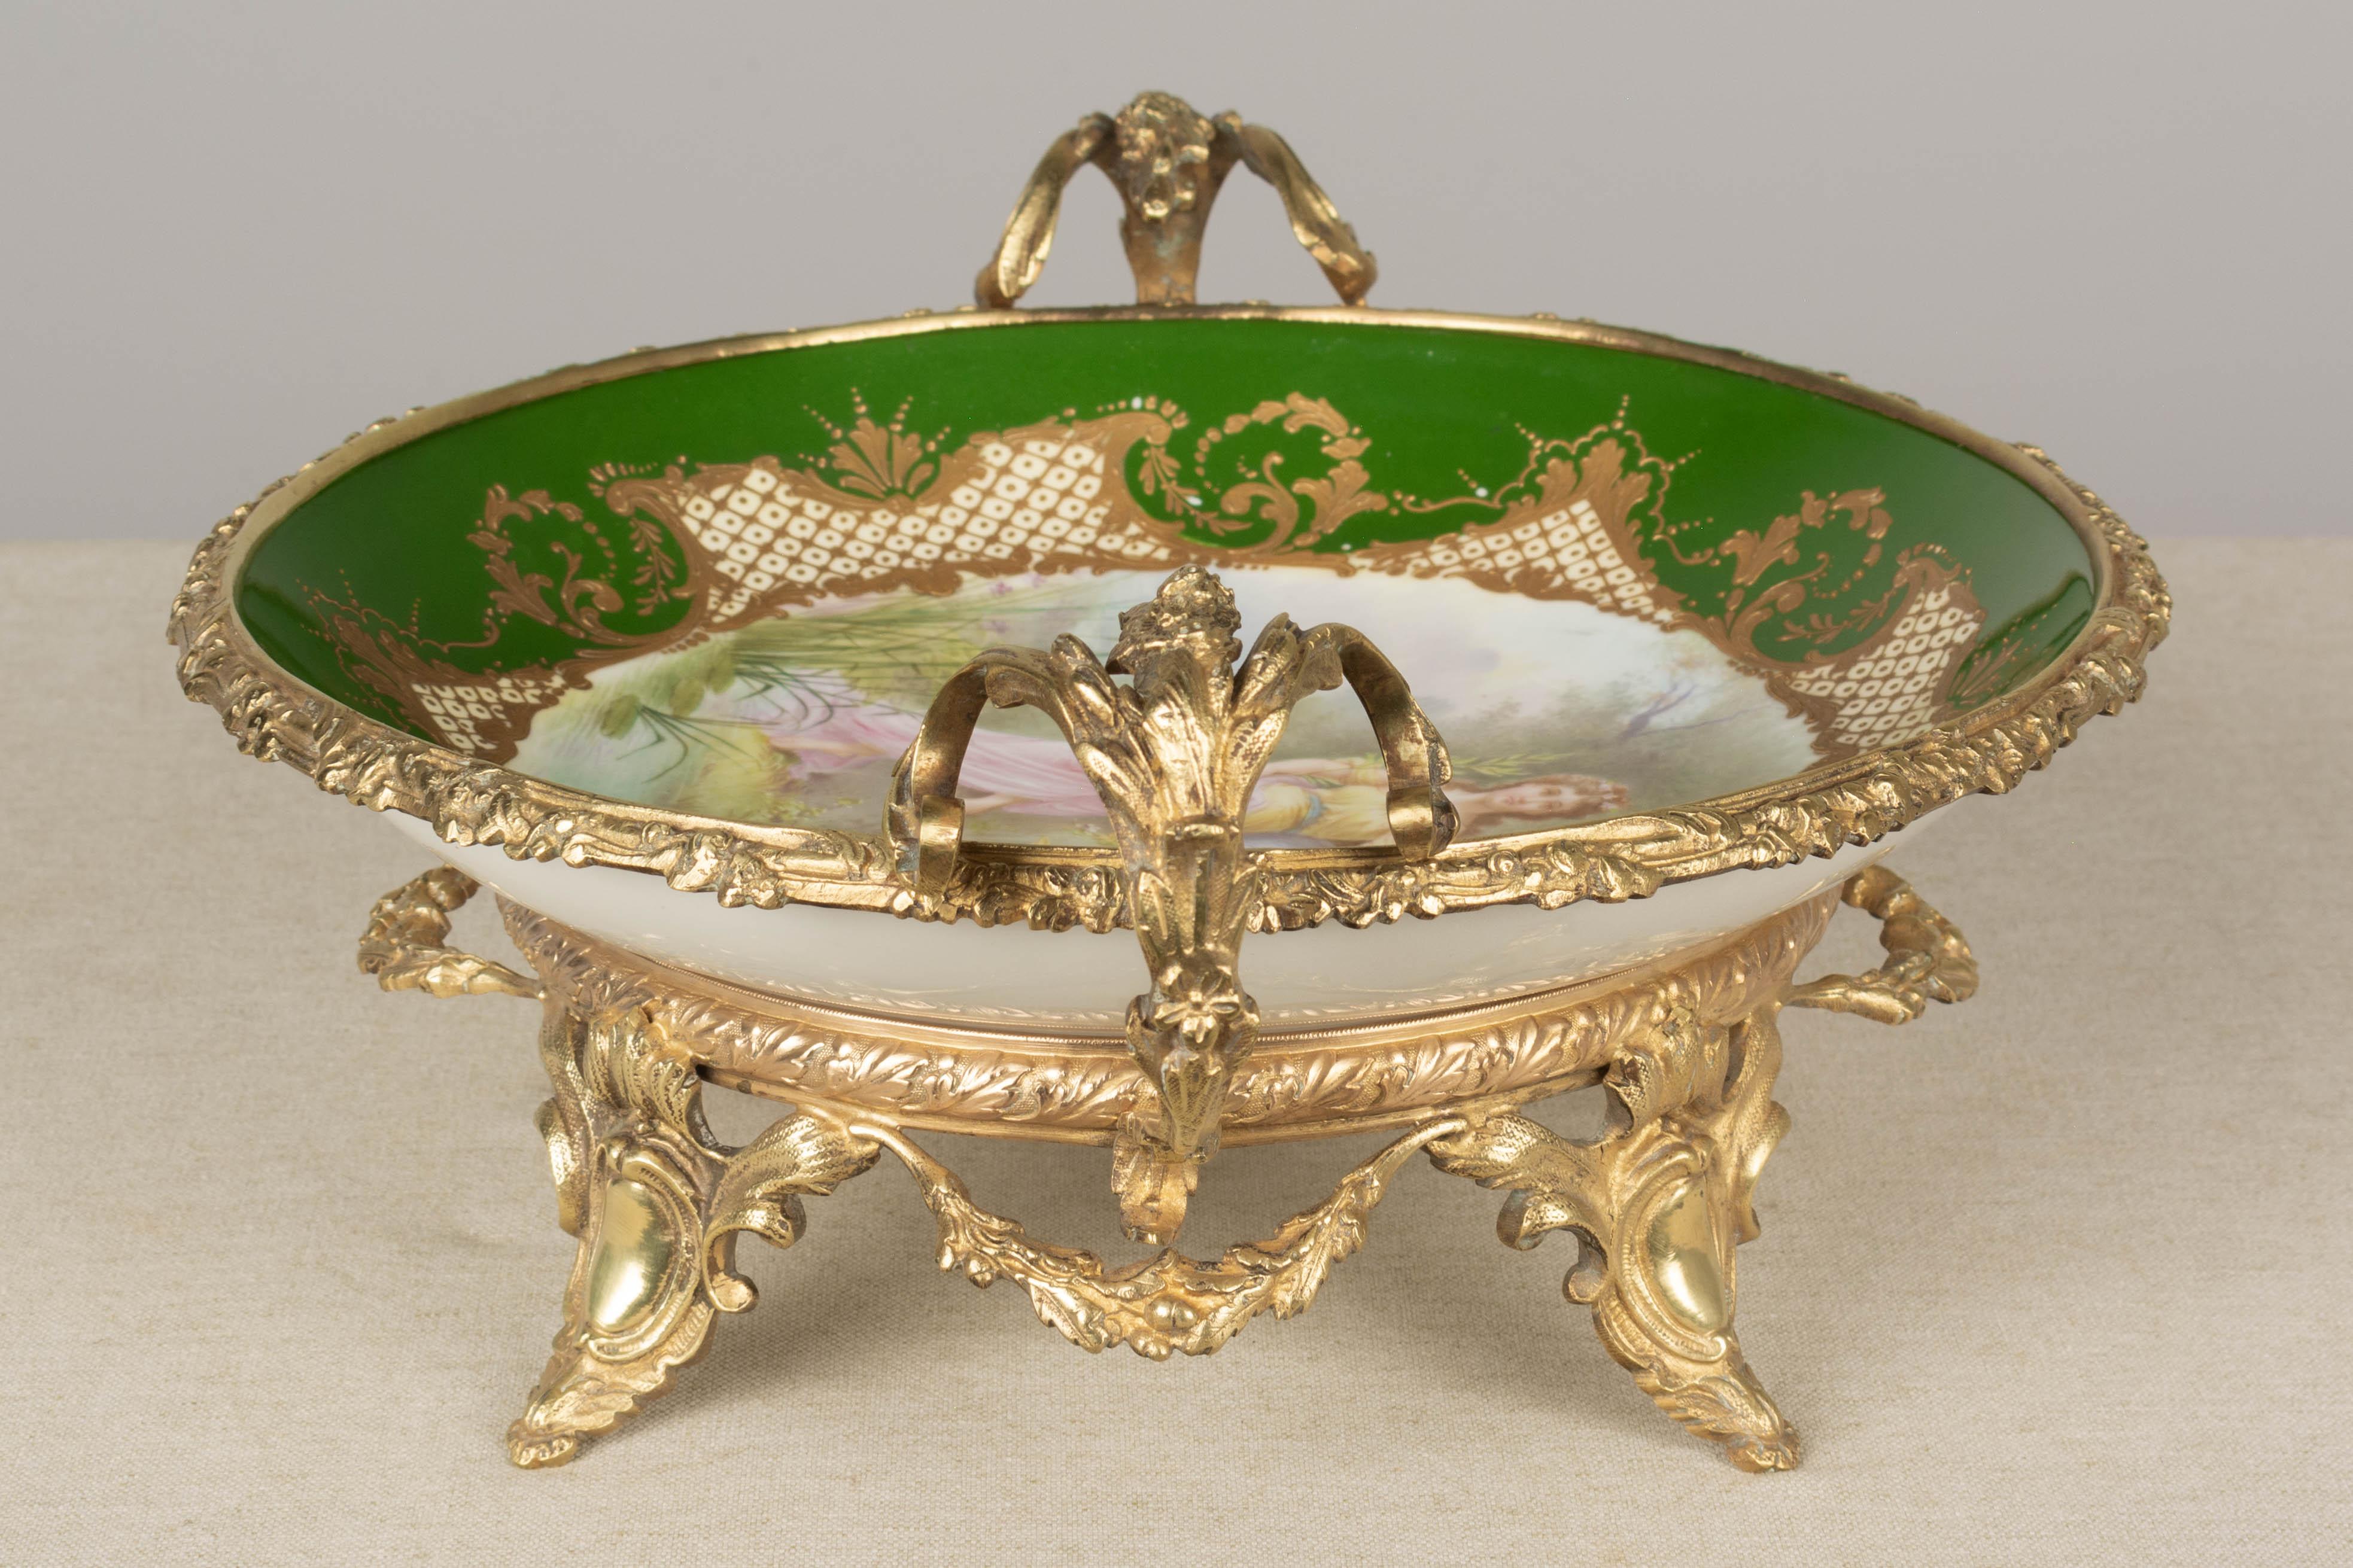 19th Century French Ormolu Sèvres Porcelain Centerpiece Bowl For Sale 3